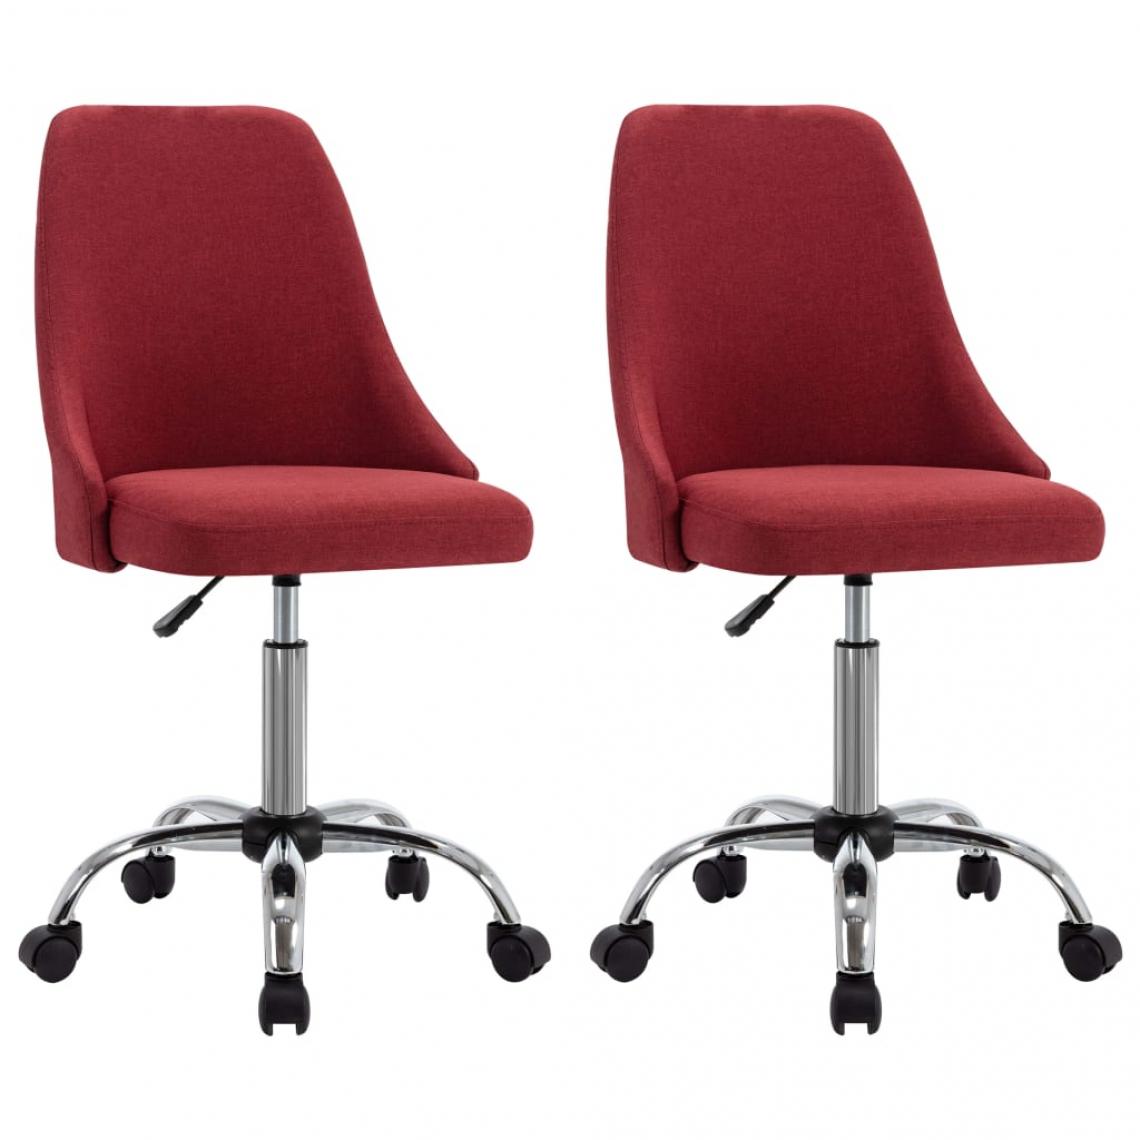 Decoshop26 - Lot de 2 chaises de salle à manger cuisine design moderne tissu rouge bordeaux CDS021002 - Chaises